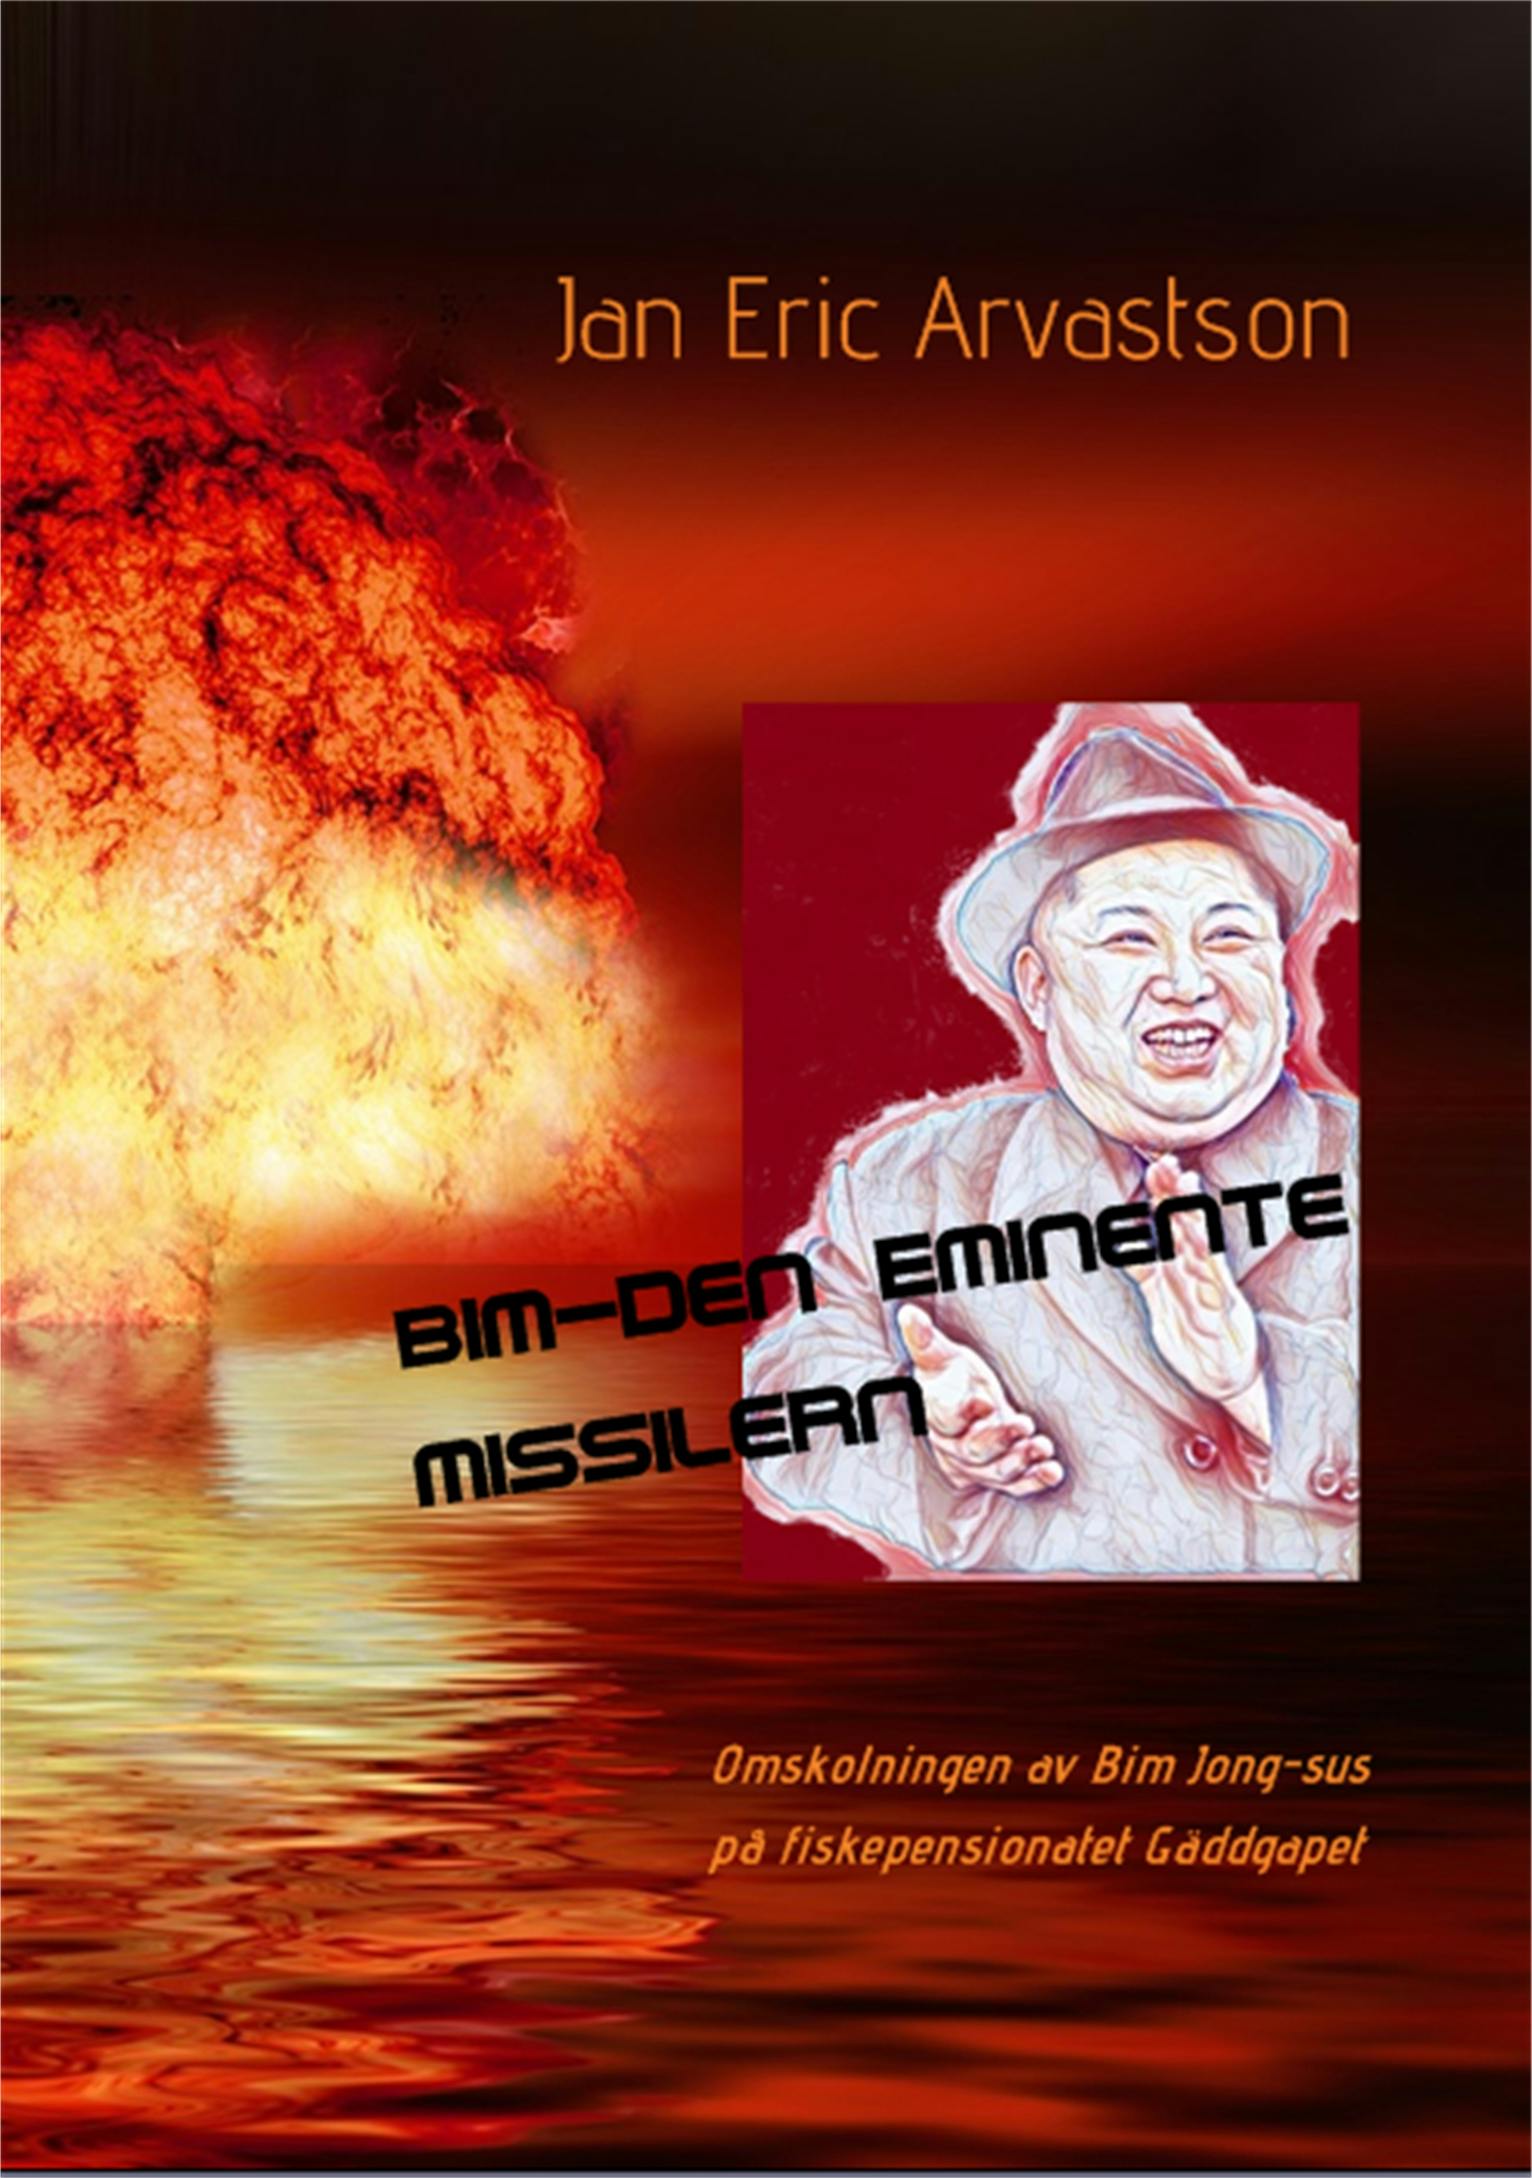 Bim-Den Eminente Missilern - undefined